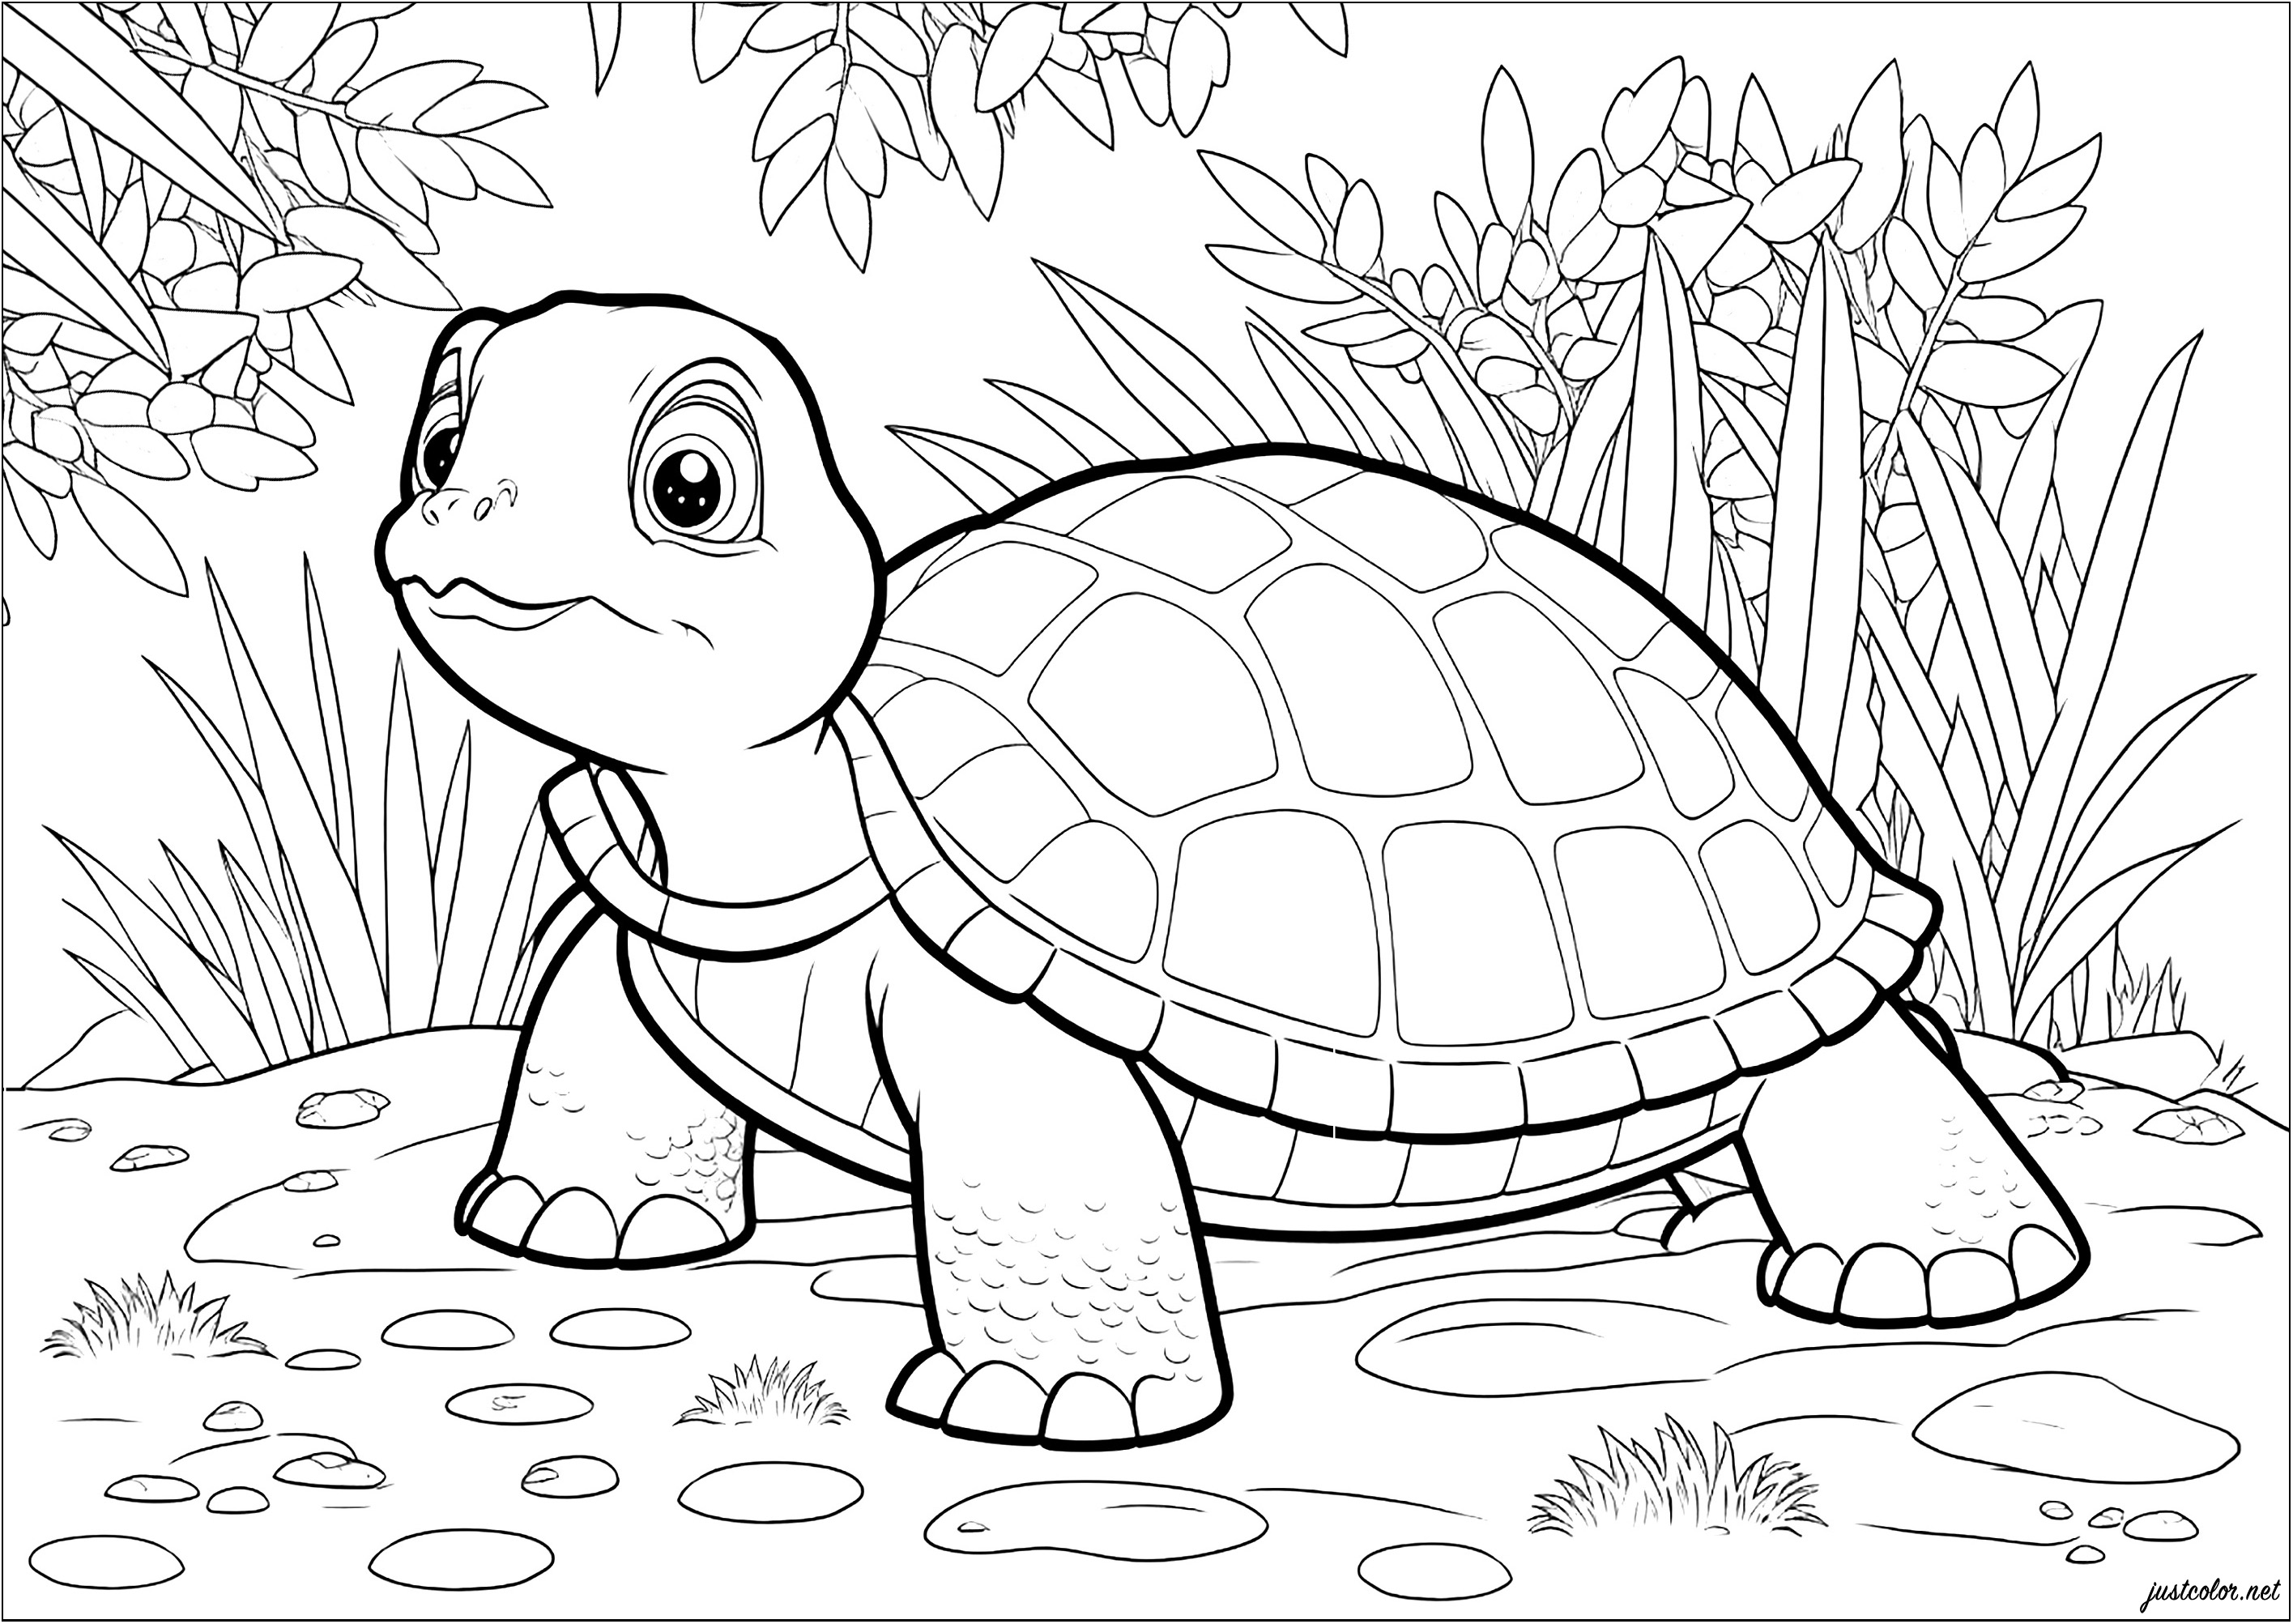 Bonito colorido de una tortuga en su entorno natural. Observa la determinación de la tortuga mientras avanza lentamente hacia su objetivo.